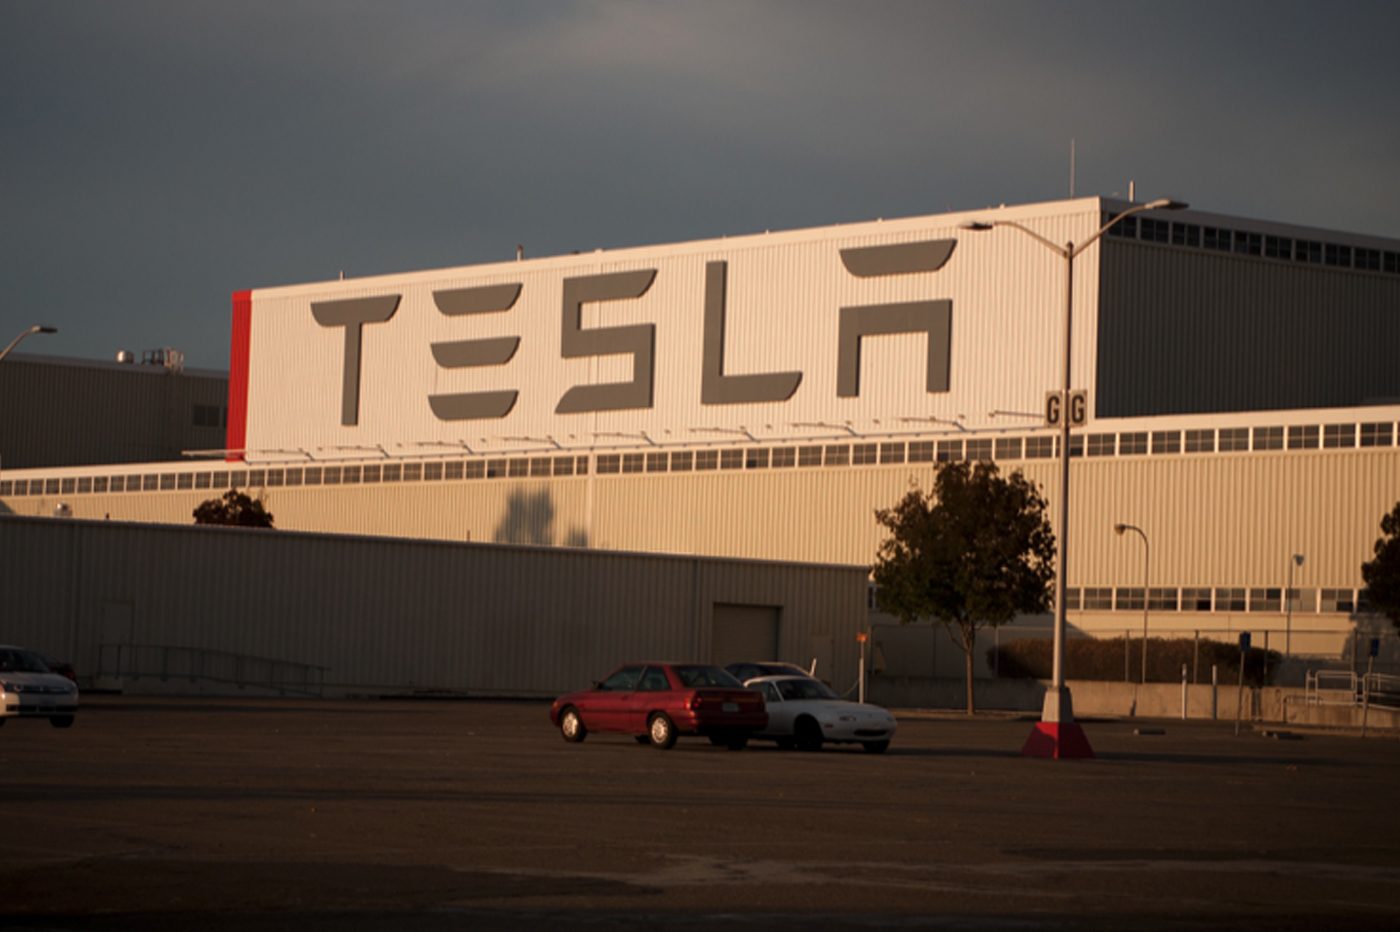 Pénurie de bureaux chez Tesla : l’interdiction du télétravail sème le chaos dans l’entreprise - 01net.com